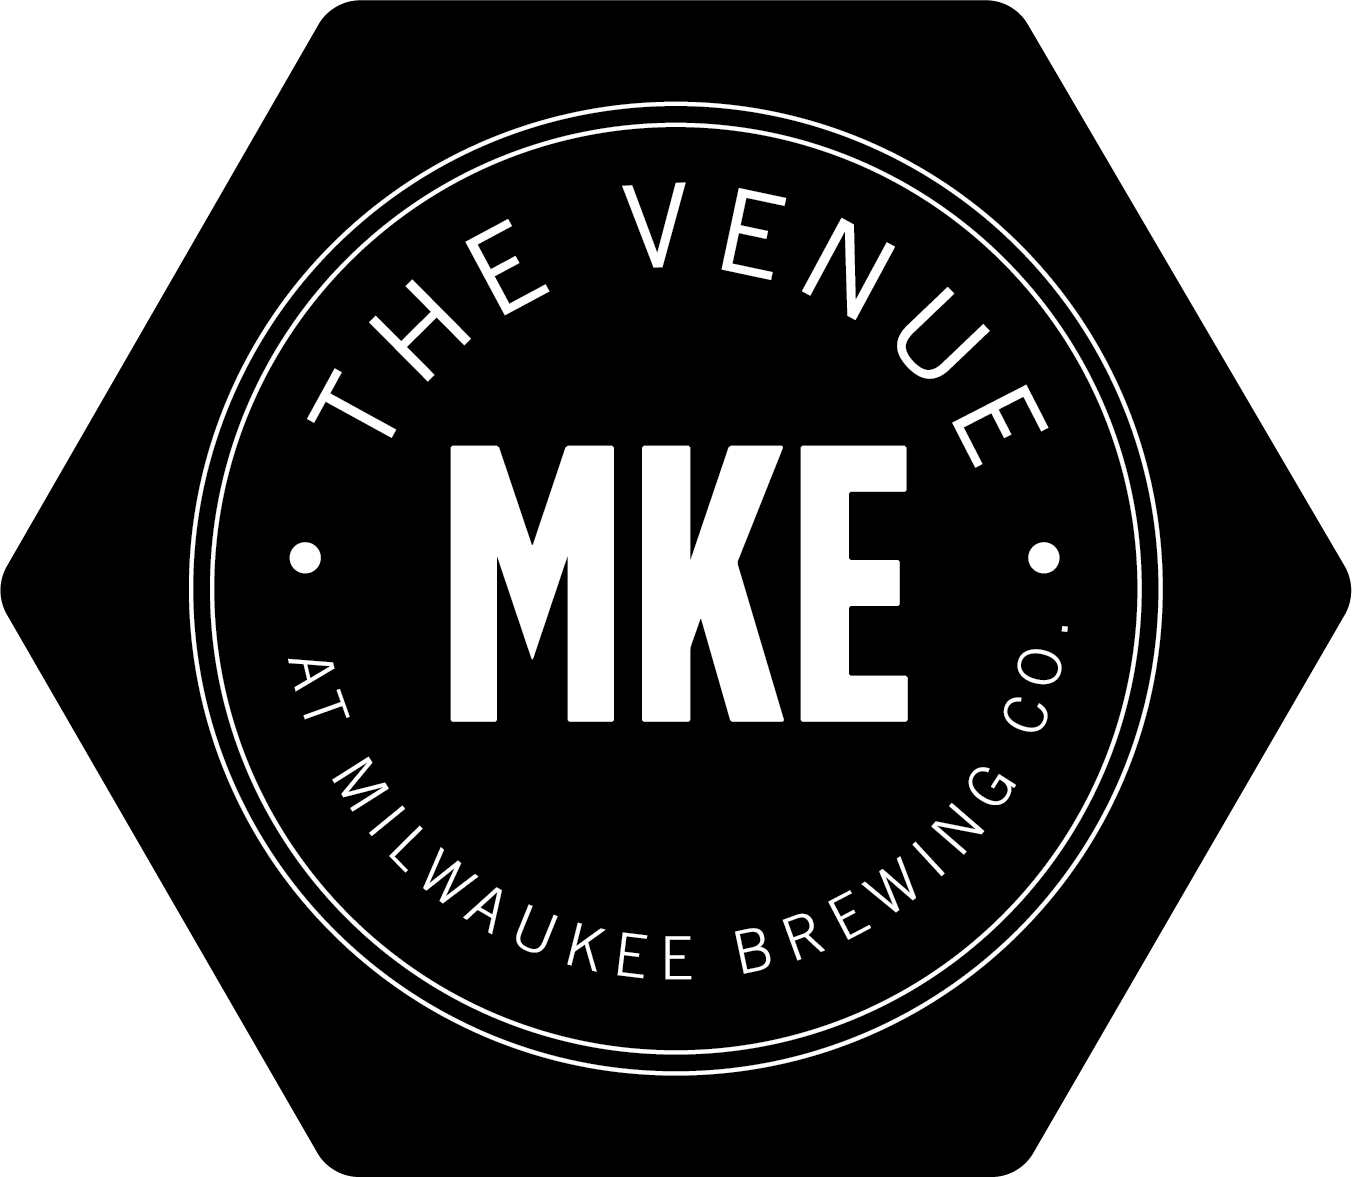 The Venue MKE